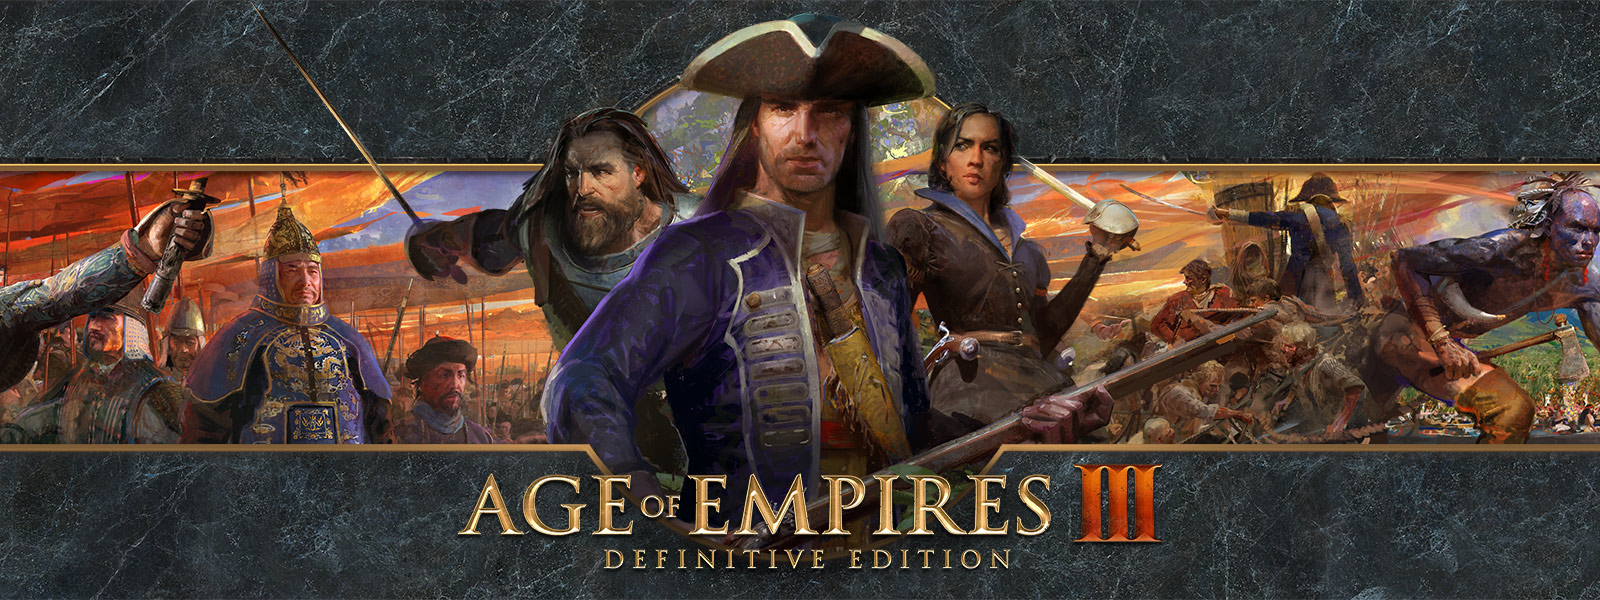 Age of Empires III: Definitive Edition-logotypen mot en bakgrund som visar härförare och deras arméer